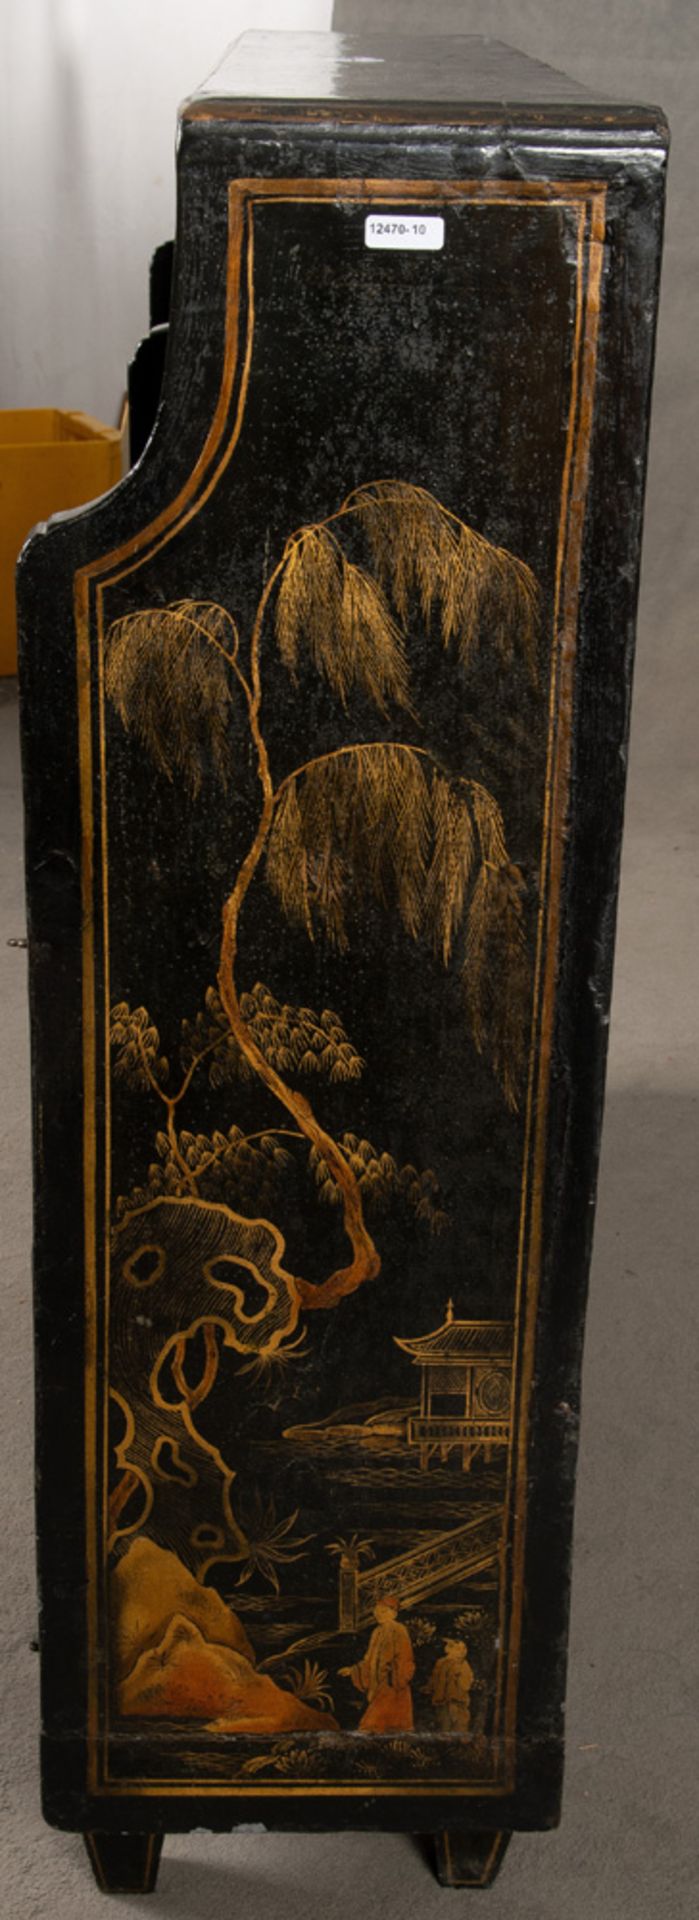 Anrichte. Asien. Massivholz, schwarz lackiert und gold gehöht mit Personen in Landschaft, Blumen, - Image 3 of 5